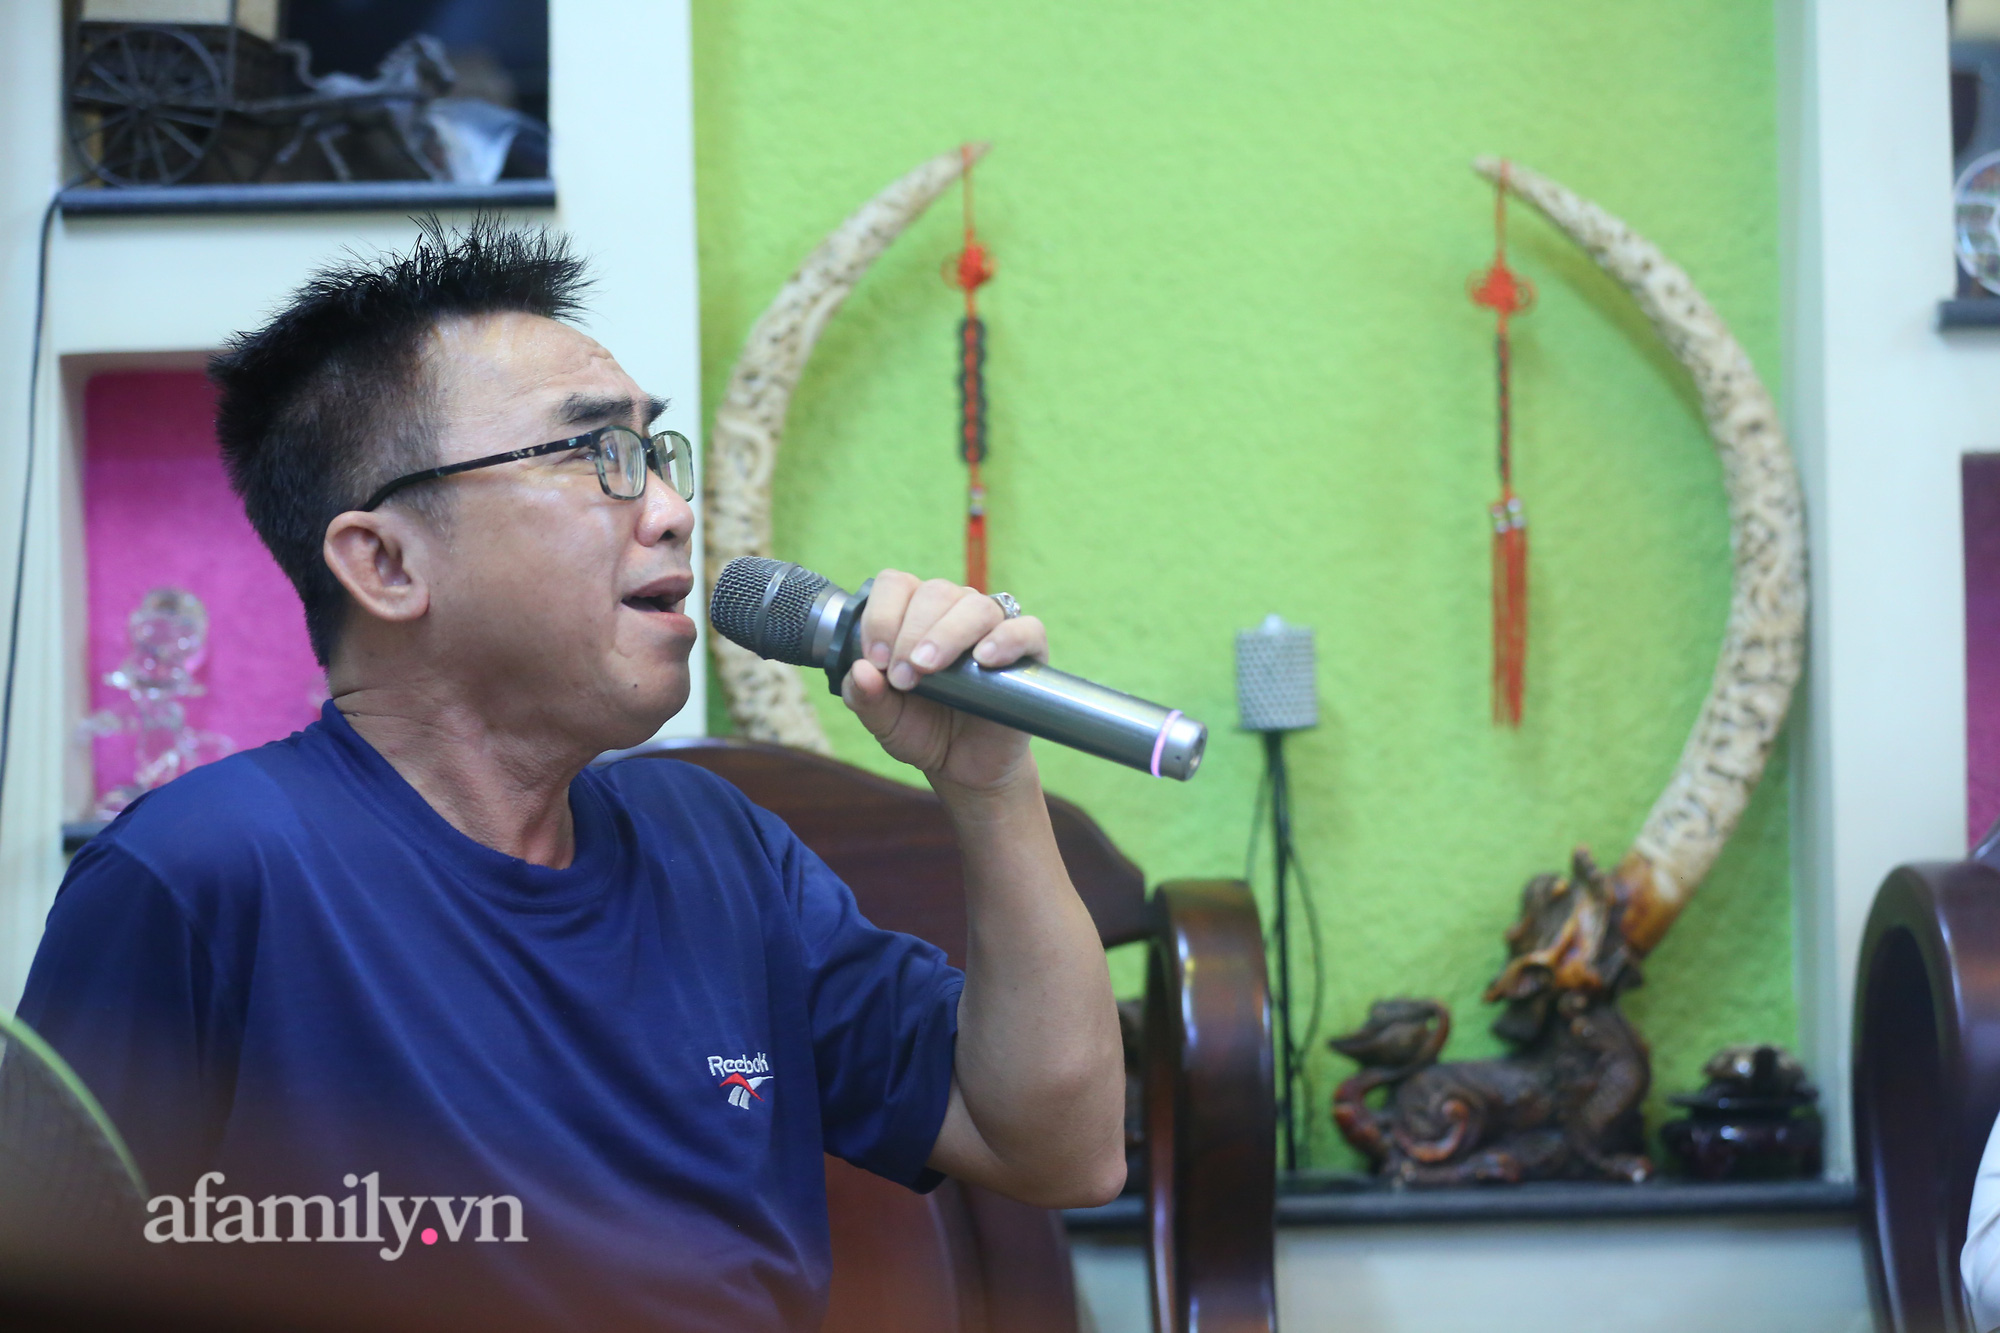 Dịch vụ "KARAOKE MANG VỀ" của chuỗi karaoke nổi tiếng ở Sài Gòn: Thuê không sướng, nhiều người bỏ vài trăm triệu mua trọn bộ được lắp hẳn phòng cách âm nhưng liệu có khả thi?  - Ảnh 5.